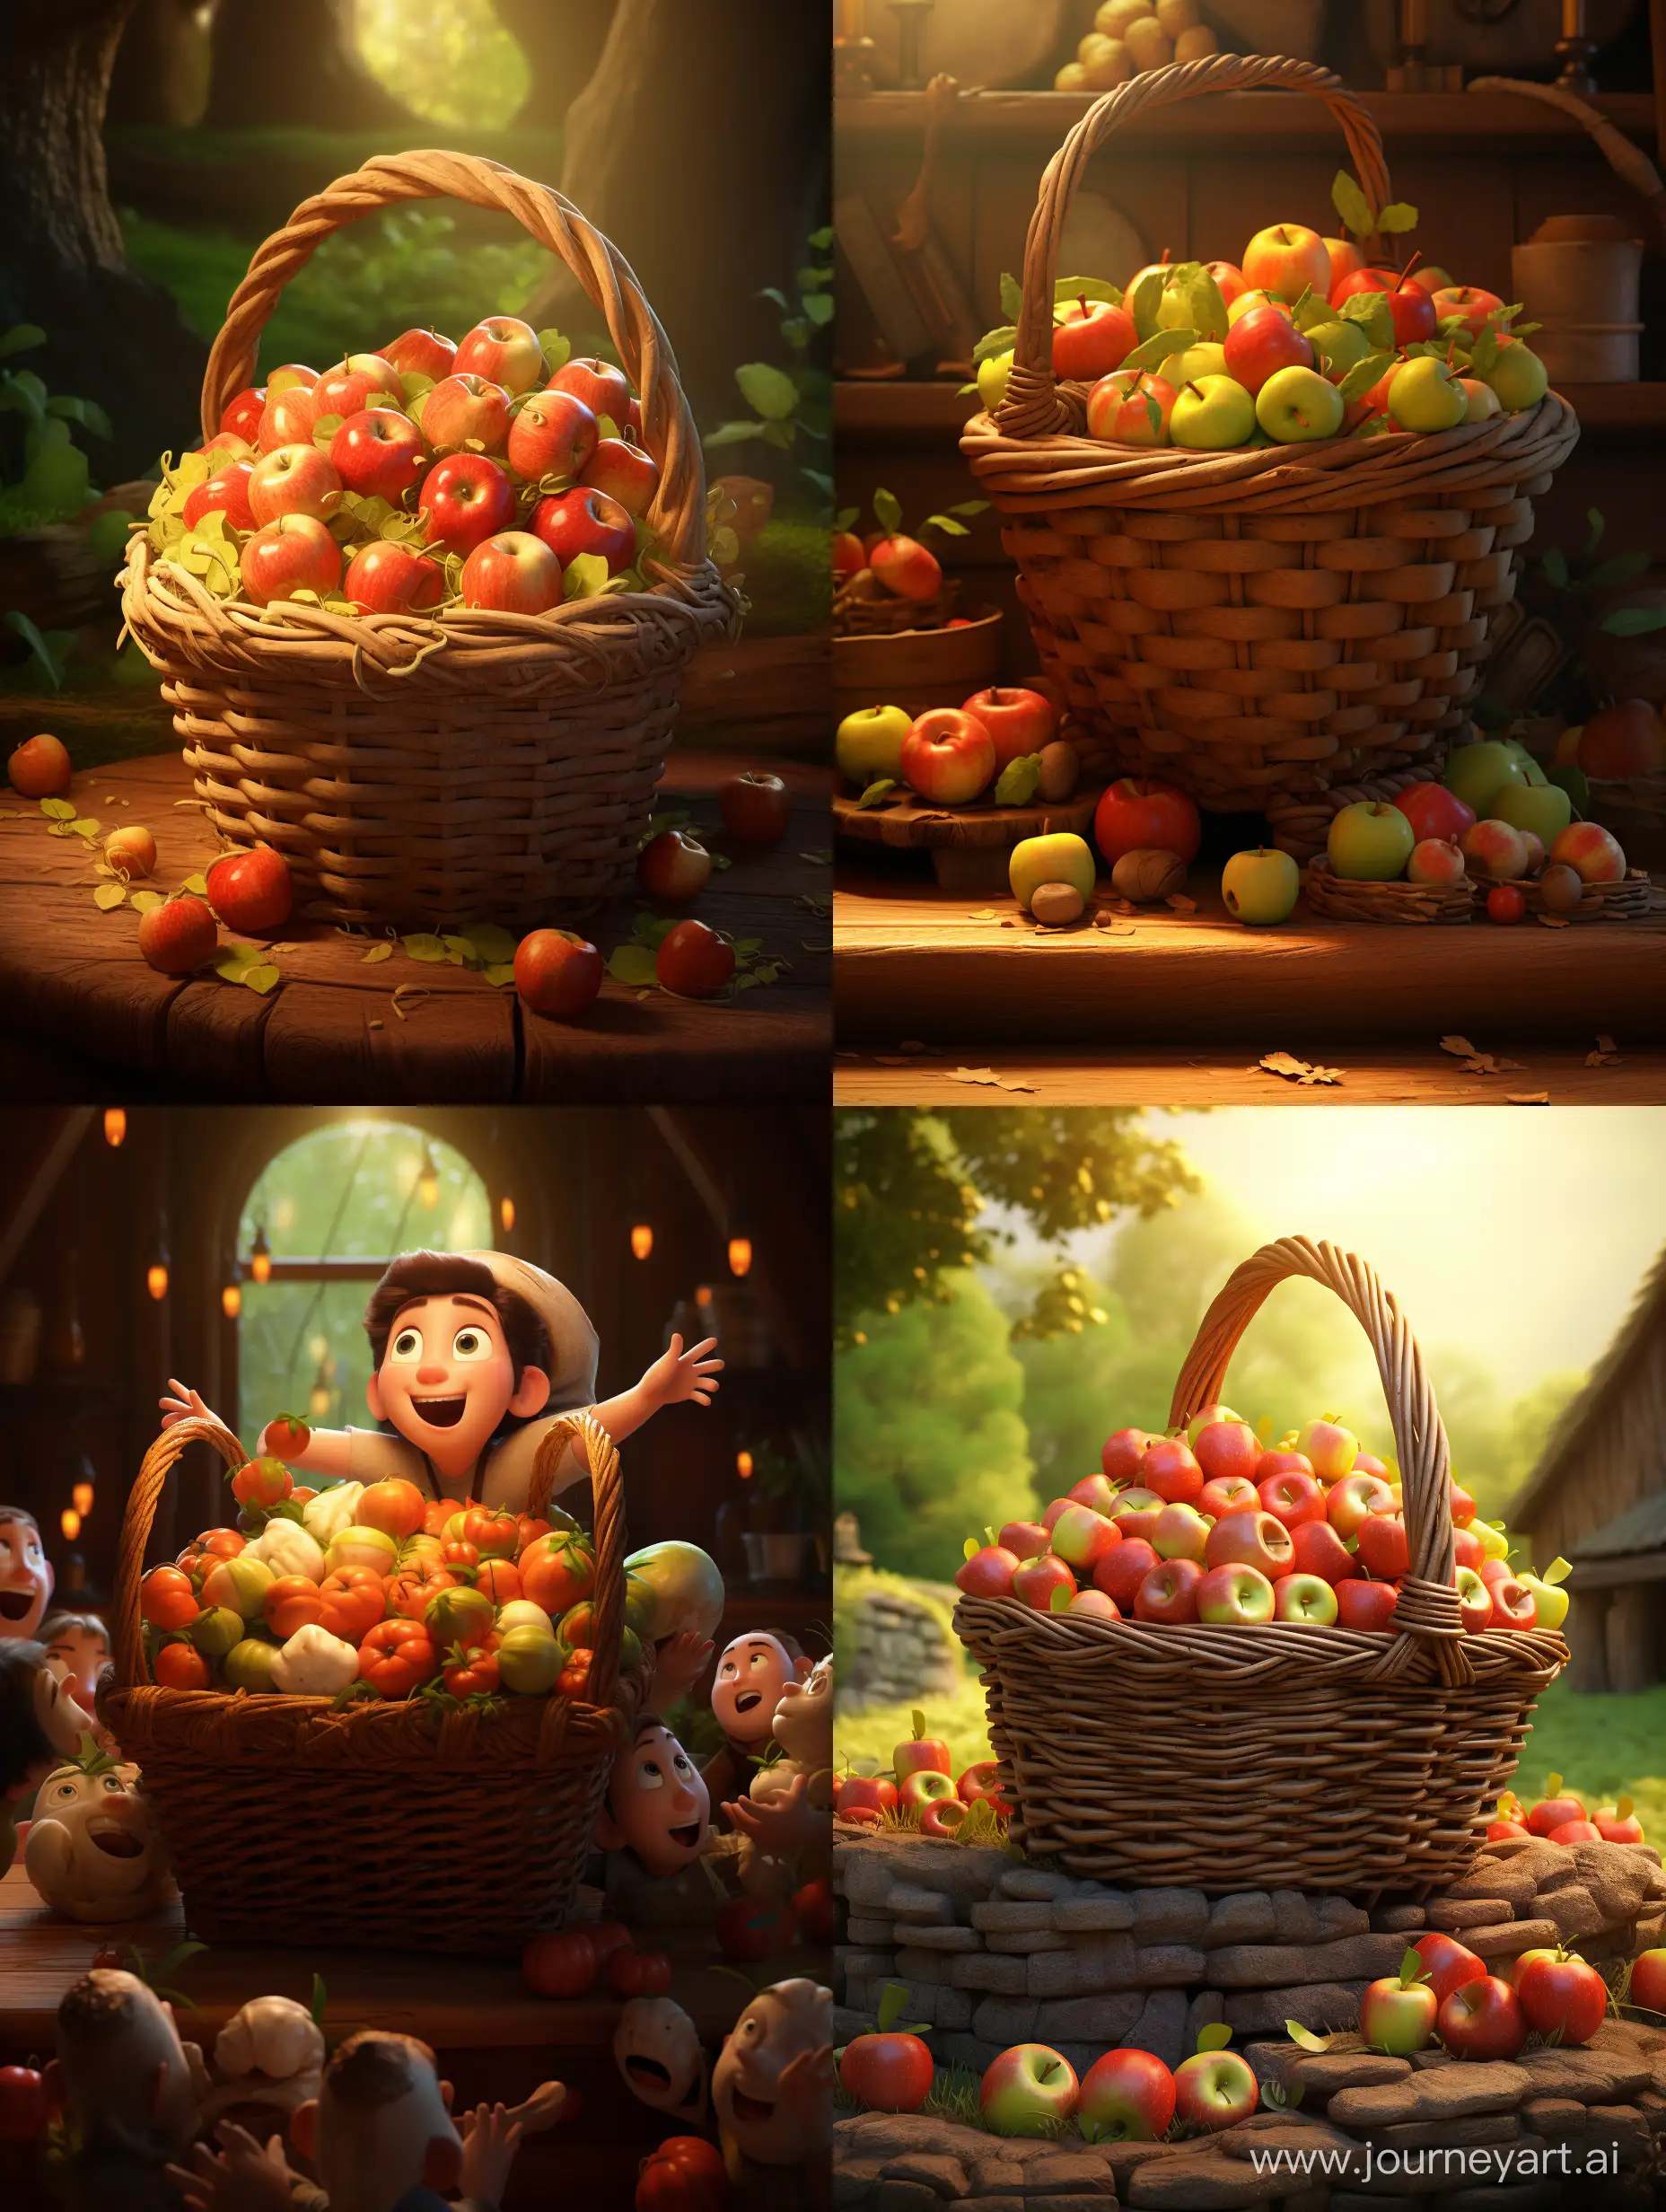 Basket-of-Apples-in-Pixar-Style